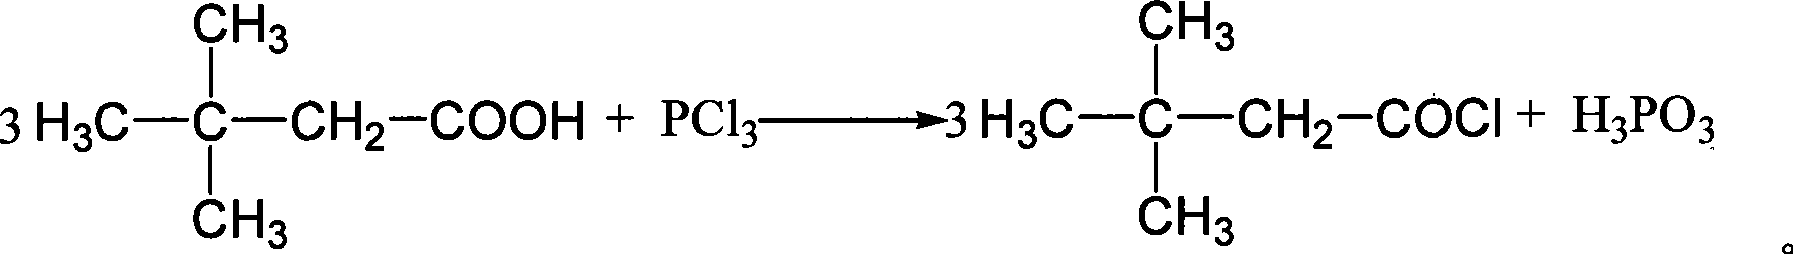 Synthetic method of 3,3-dimethyl butyladehyde